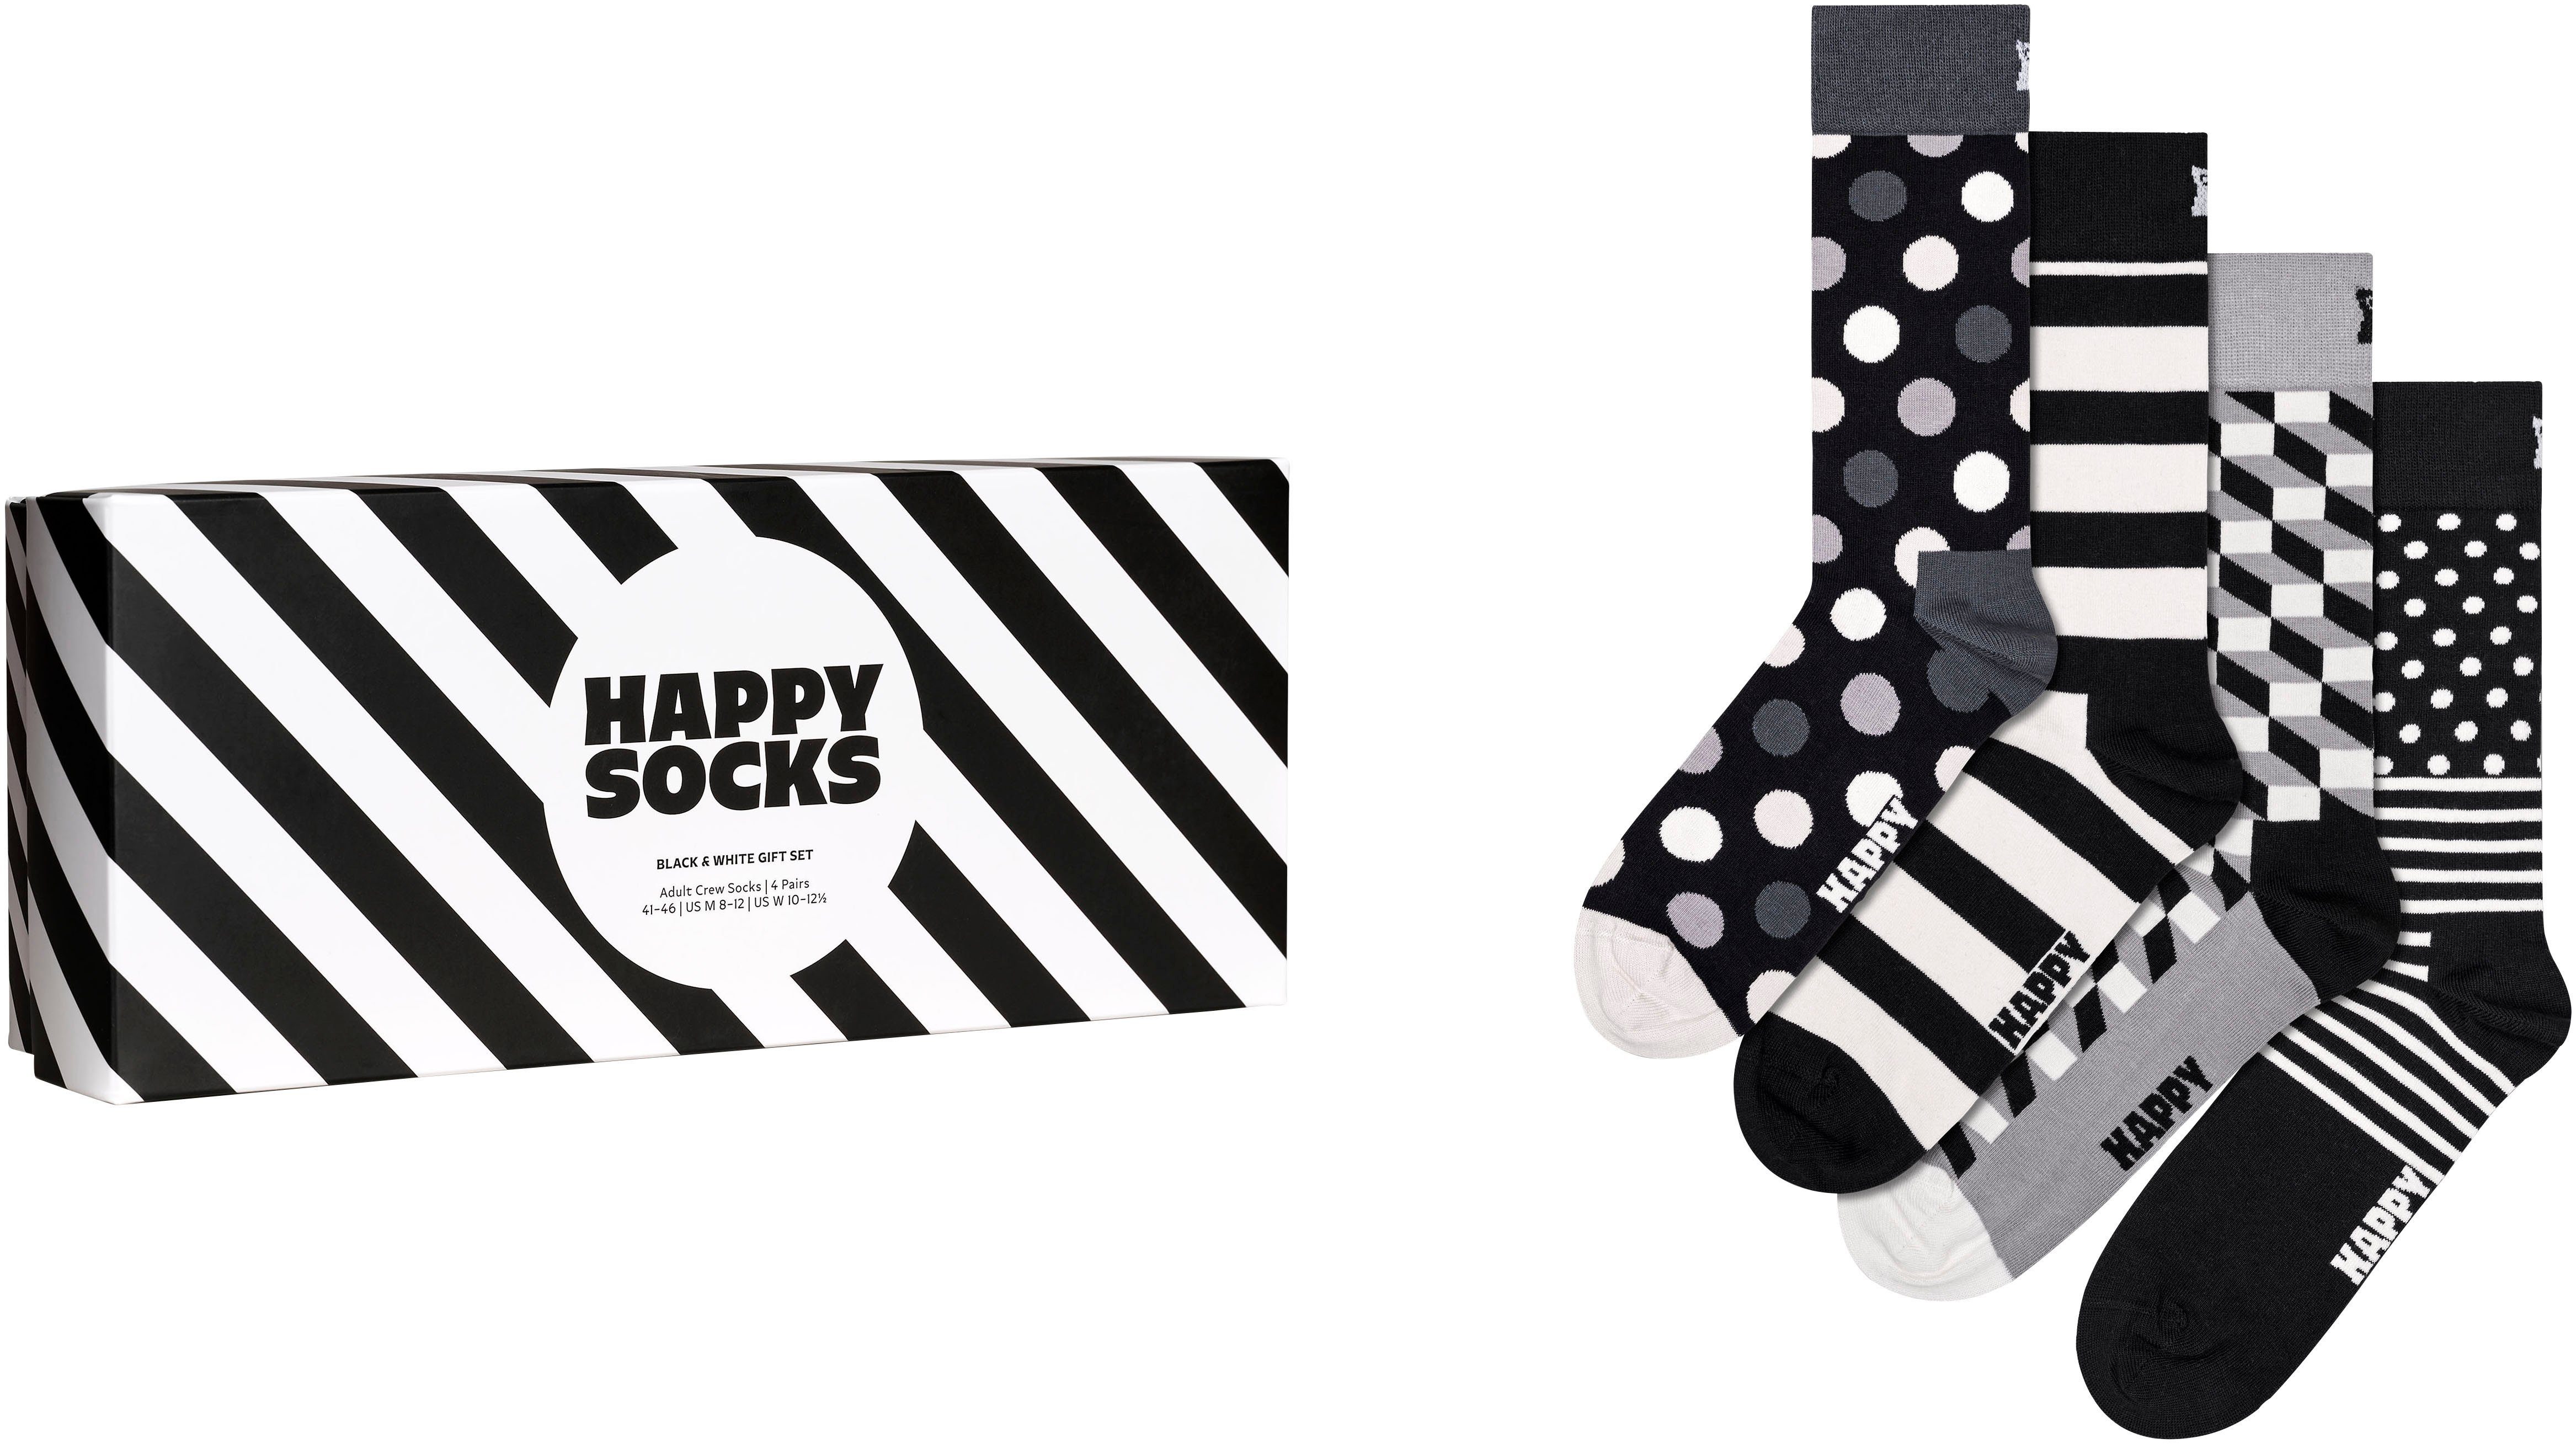 Happy Socks Socken (Packung, 4-Paar) Classic Black & White Socks Gift Set dark grey | Lange Socken